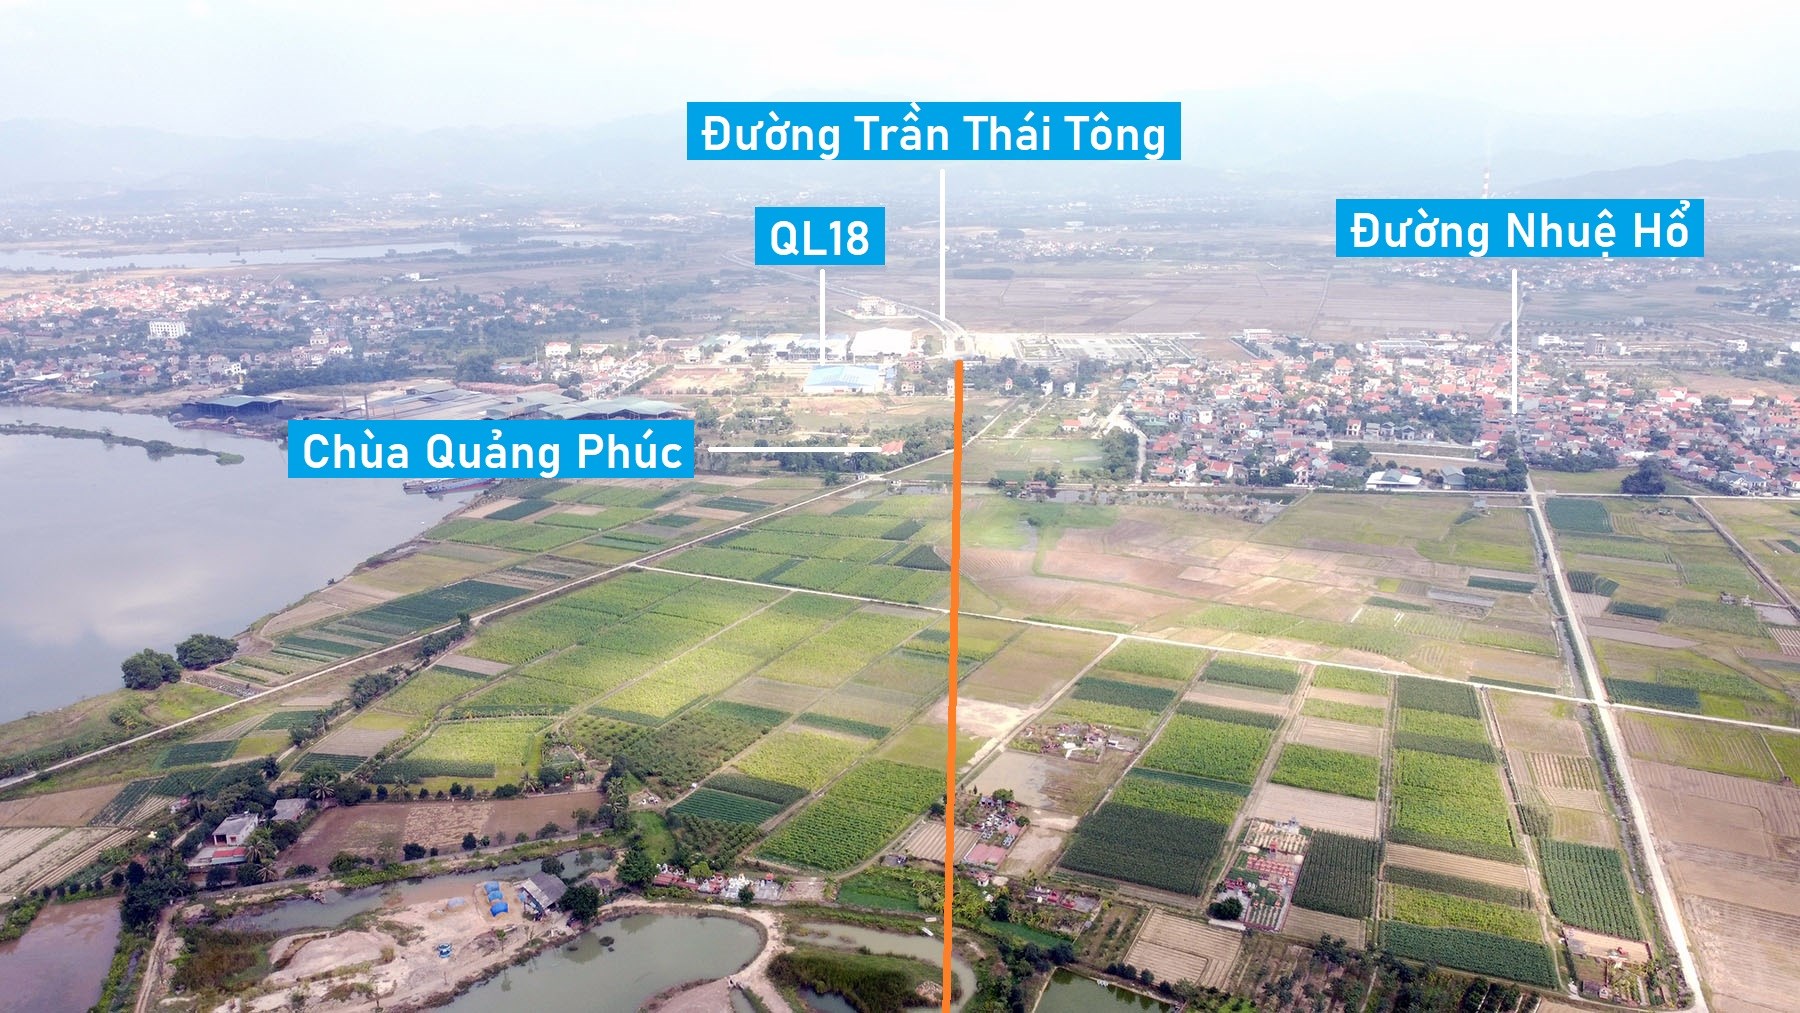 Toàn cảnh vị trí dự kiến quy hoạch cầu vượt sông Đá Vách nối Hải Dương - Quảng Ninh